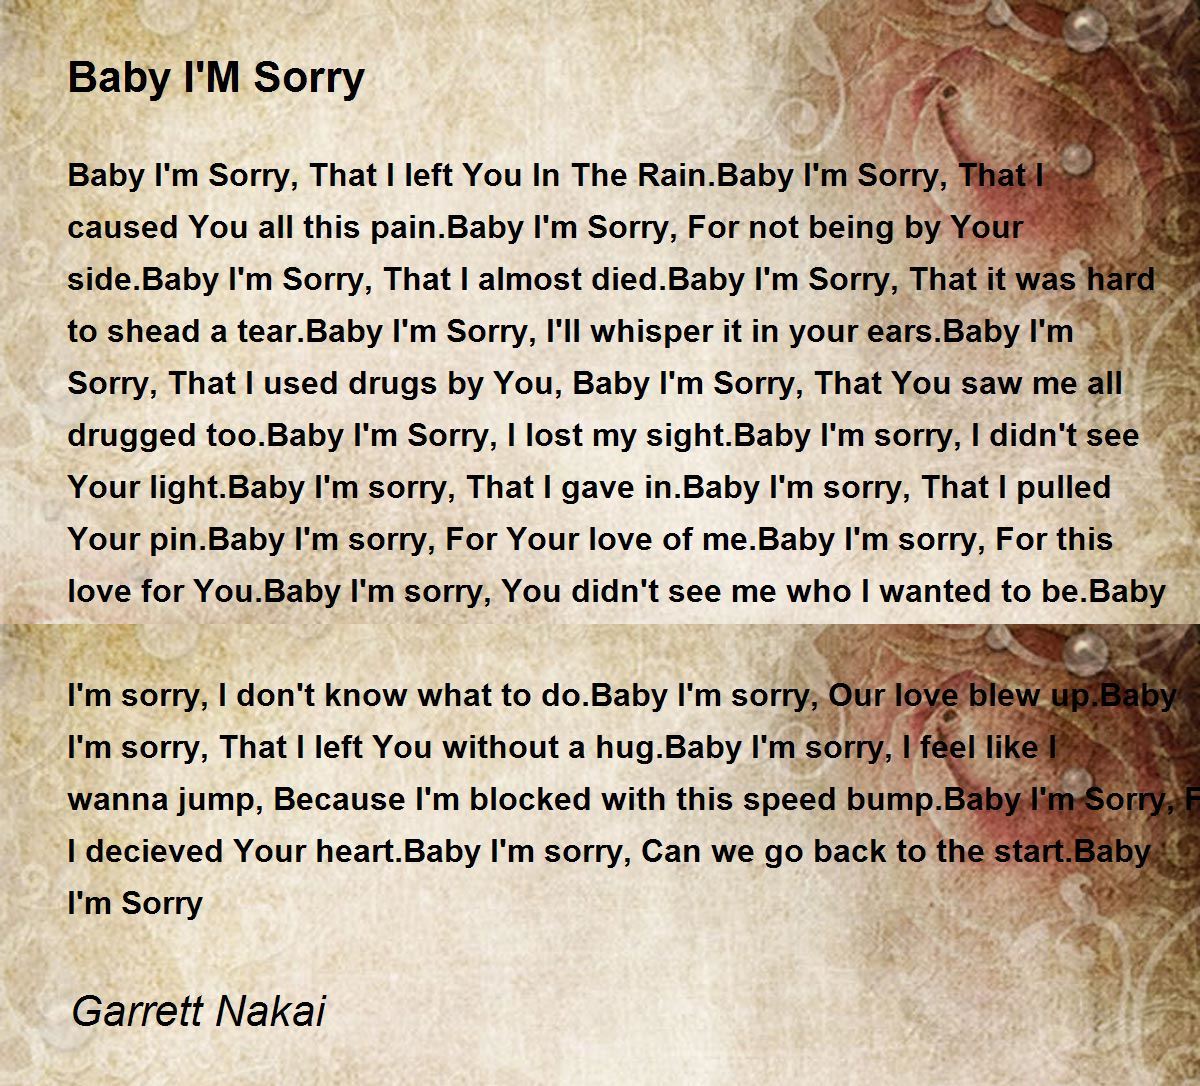 Baby I'M Sorry - Baby I'M Sorry Poem by Garrett Nakai